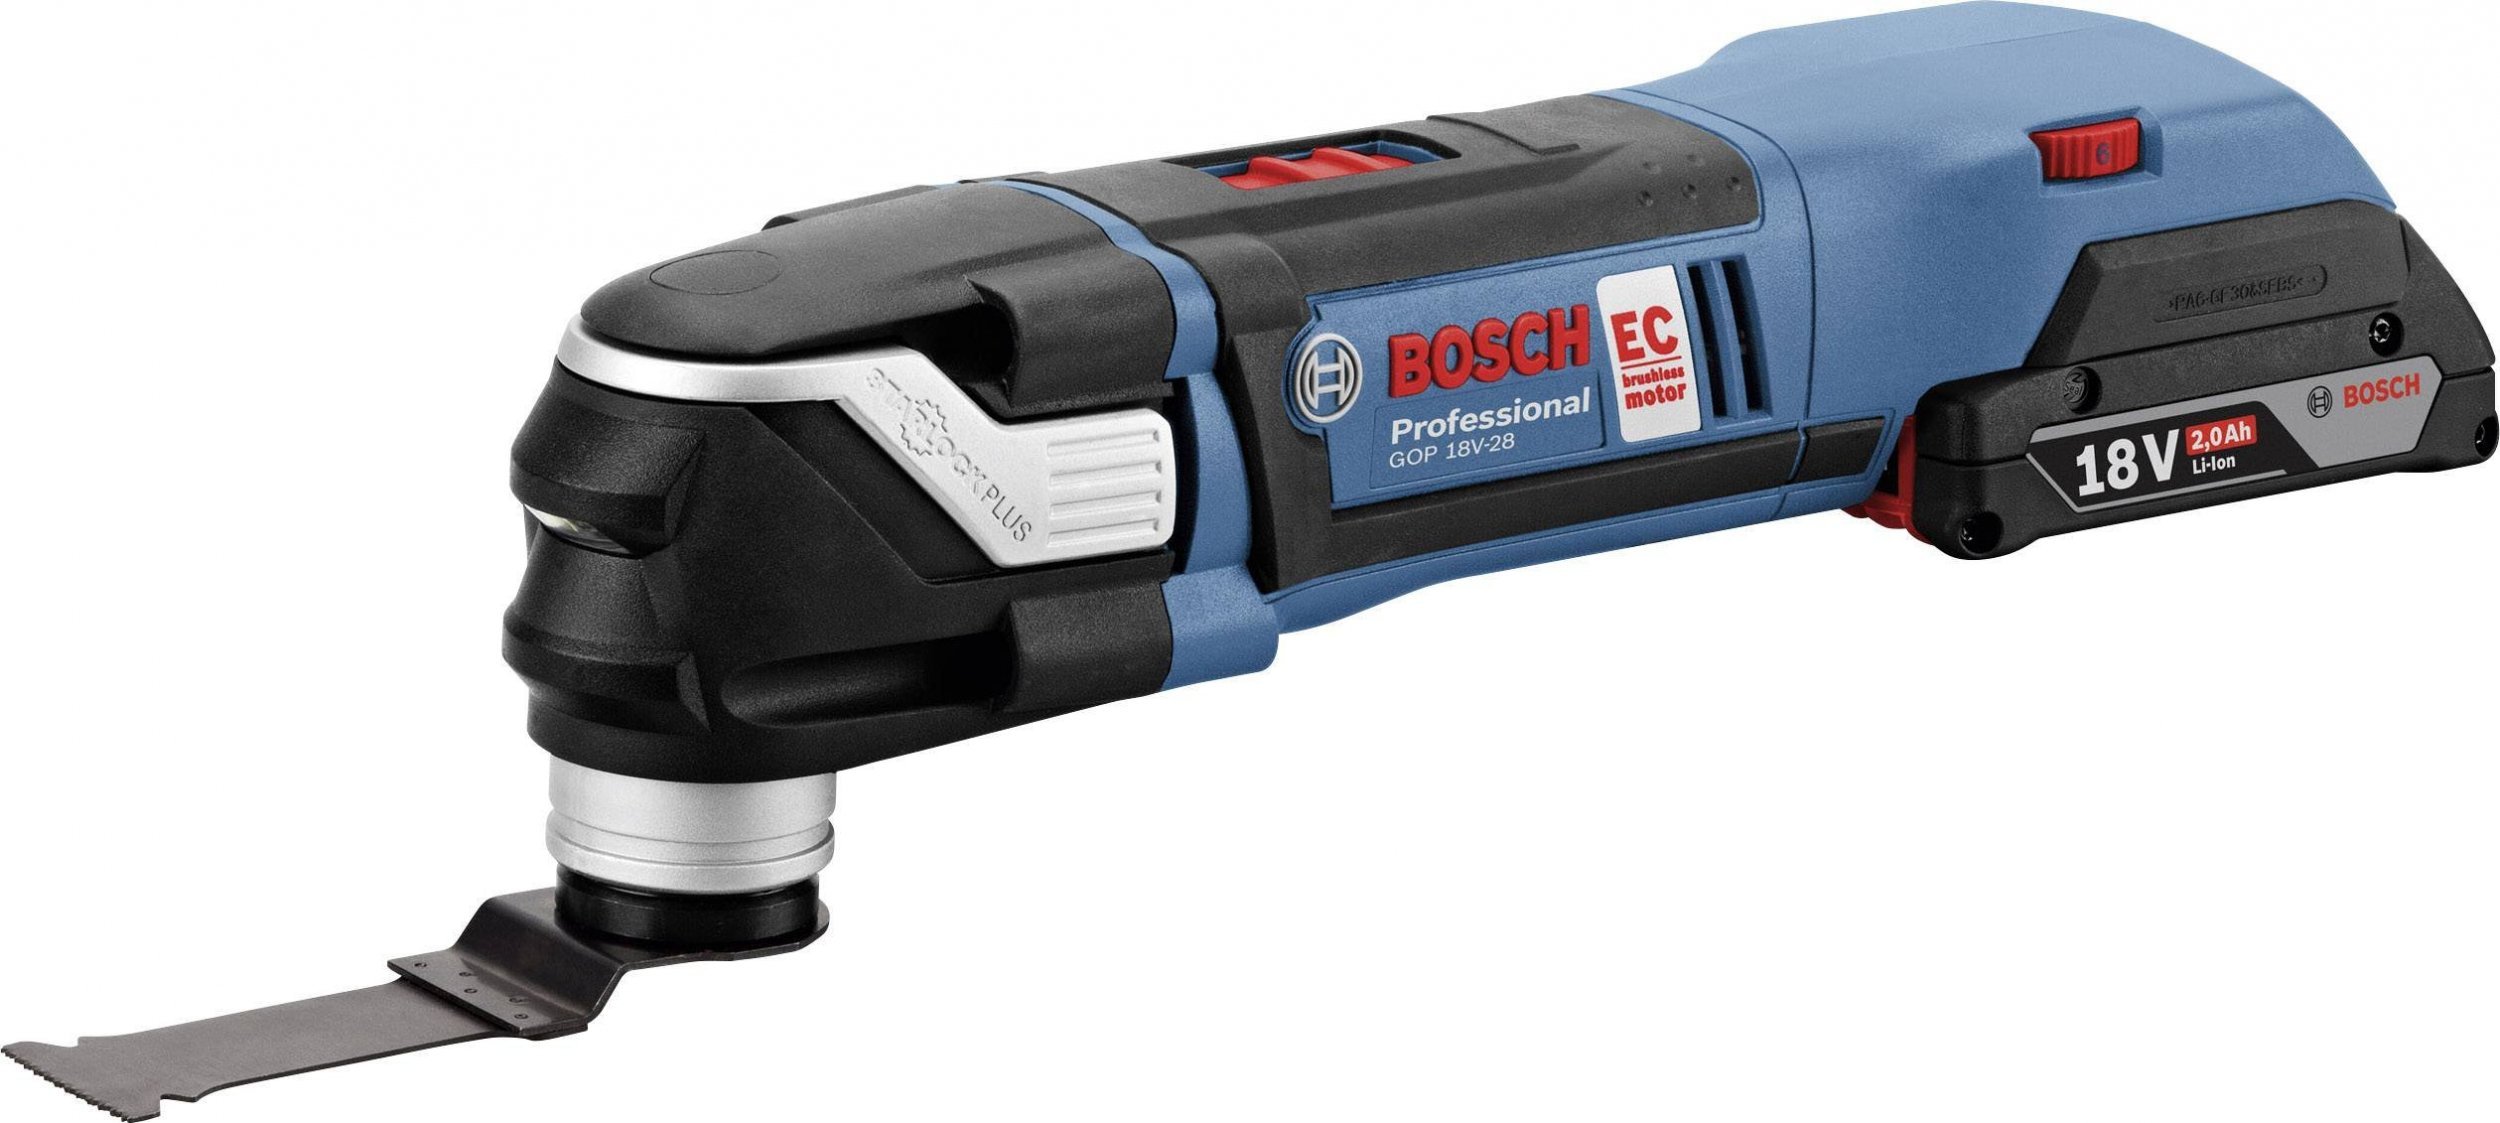 Multicutter GOP 18 V-28 Bosch Professional brushless, cu 2 acumulatori, Li-Ion, 5Ah + Accesorii + valiza